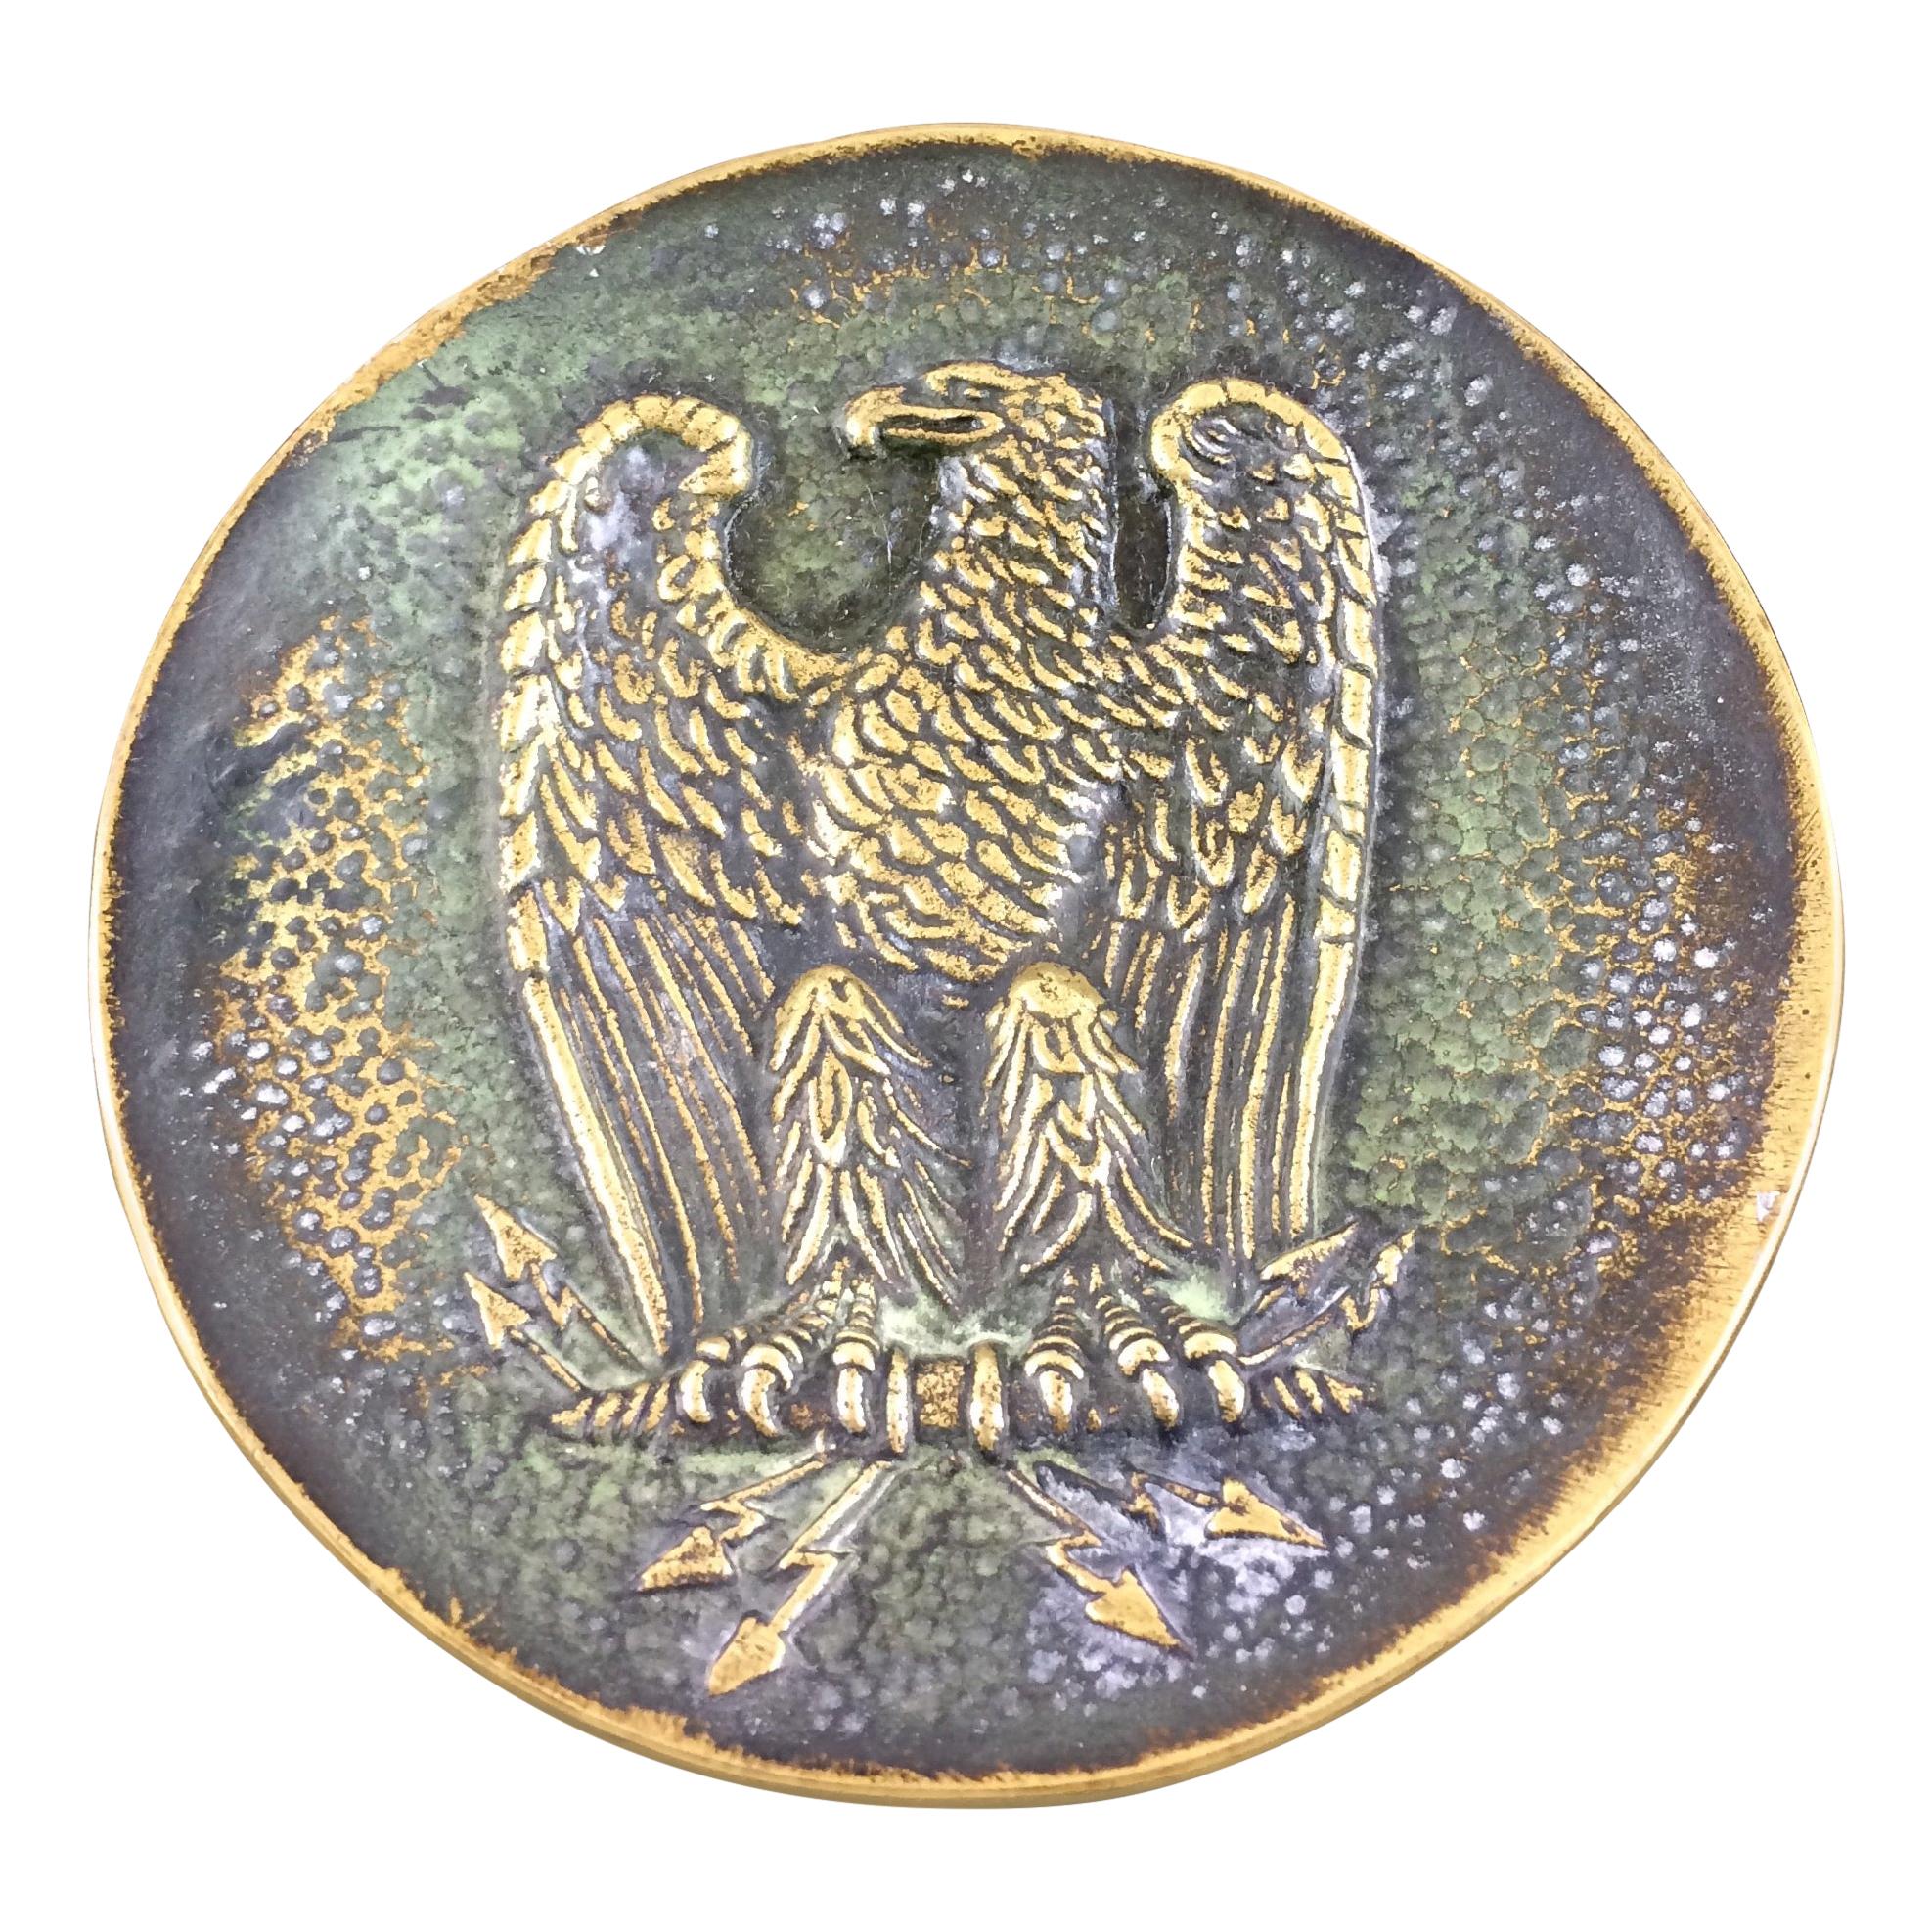 Bronze Key Holder Vide Poche signed Max Le Verrier, Imperial Eagle